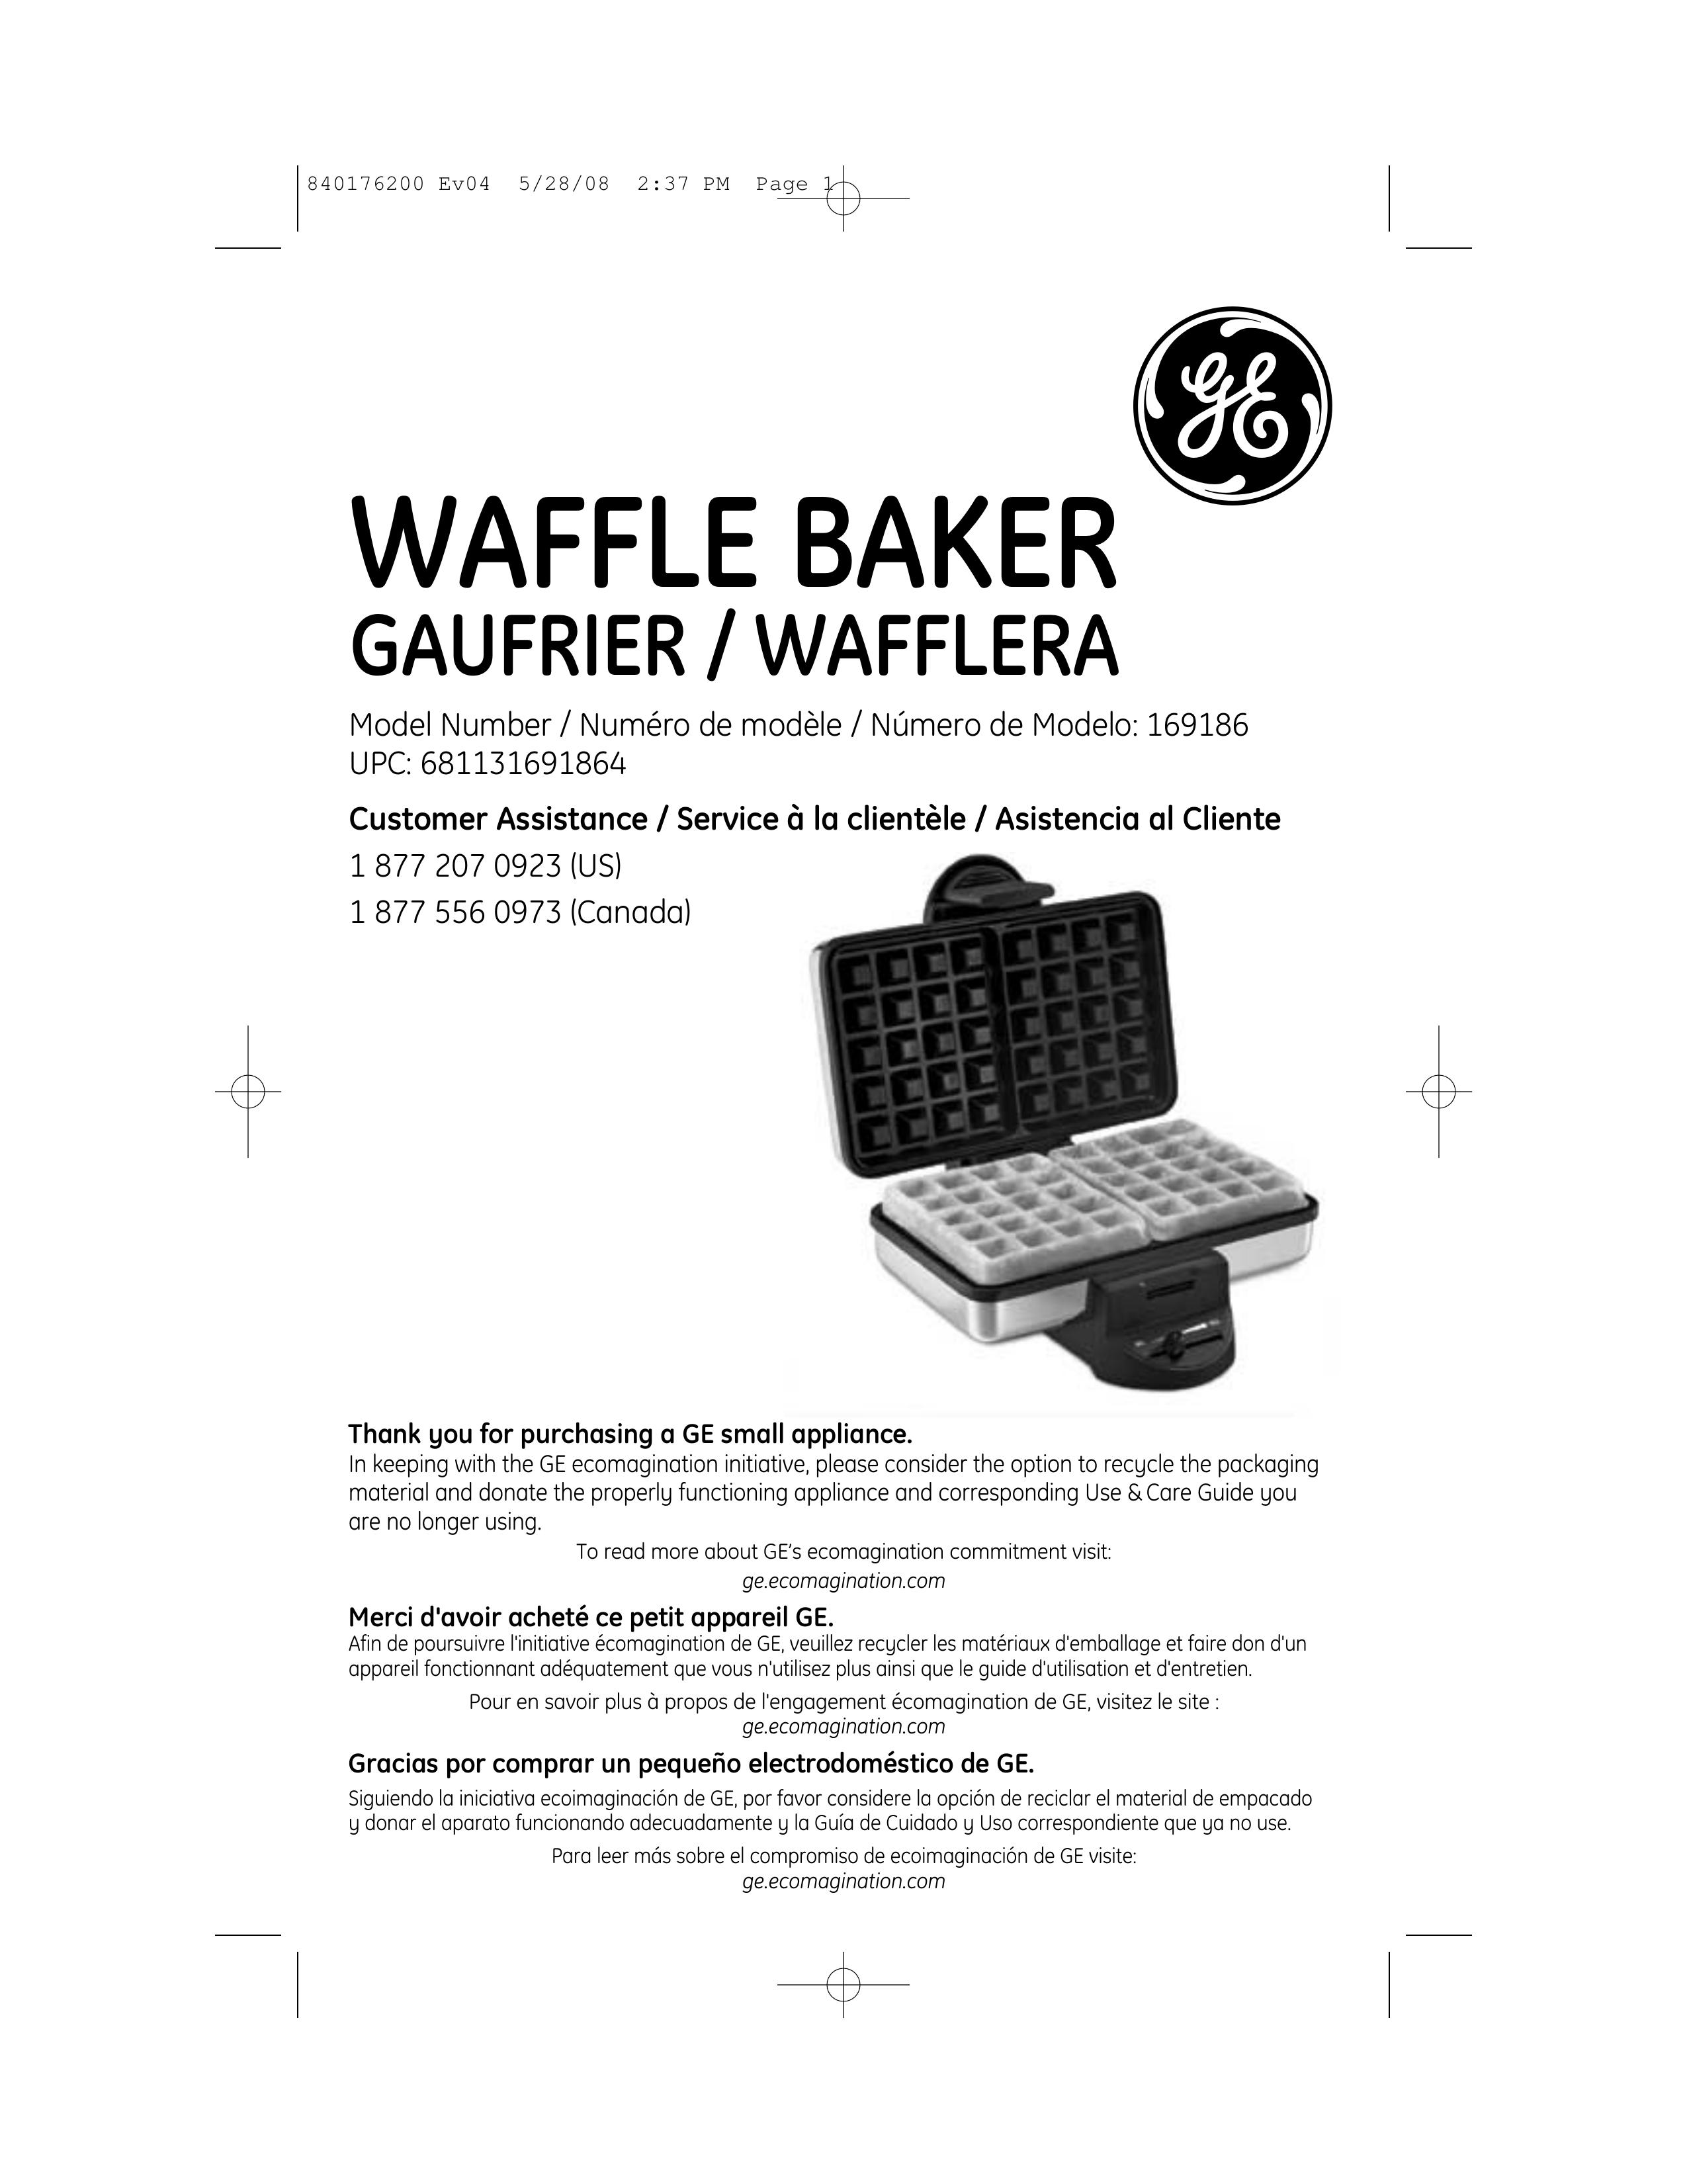 GE 840176200 Waffle Iron User Manual